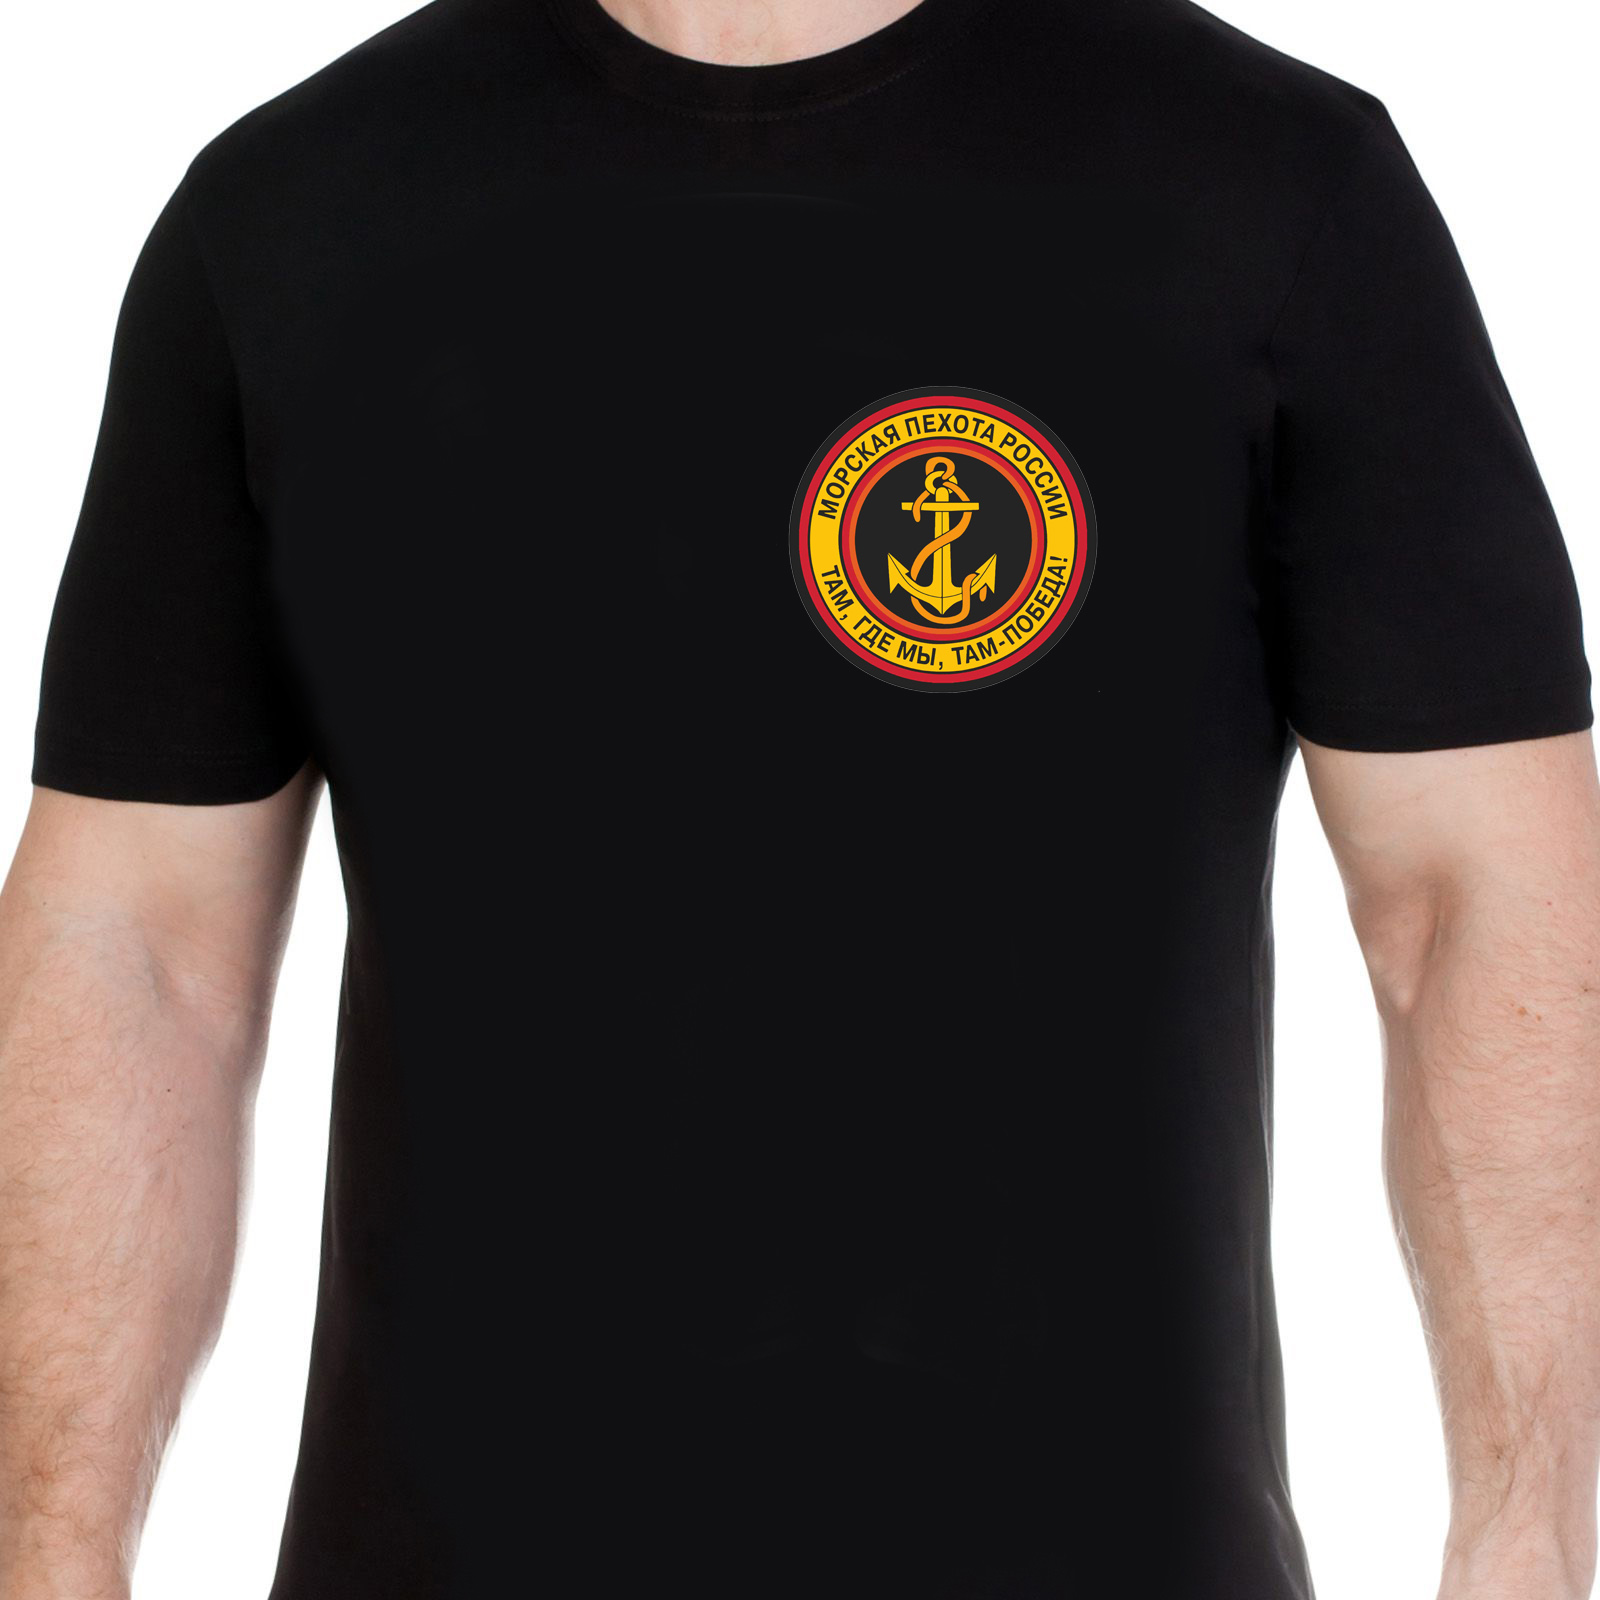 Мужская футболка с эмблемой Морской пехоты